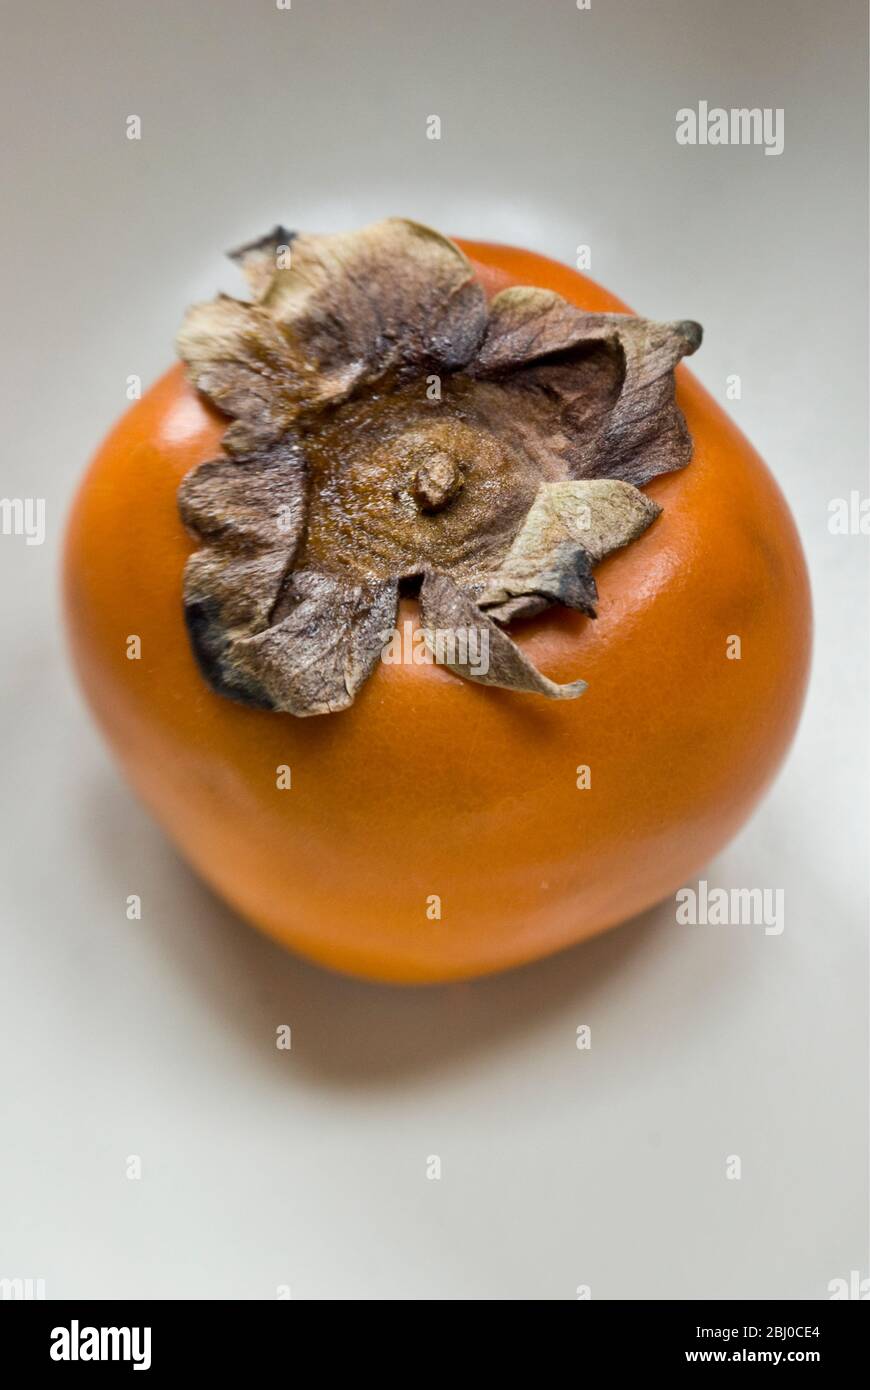 Einzelne rote Persimmon (sharon) Frucht auf dem Teller - Stockfoto